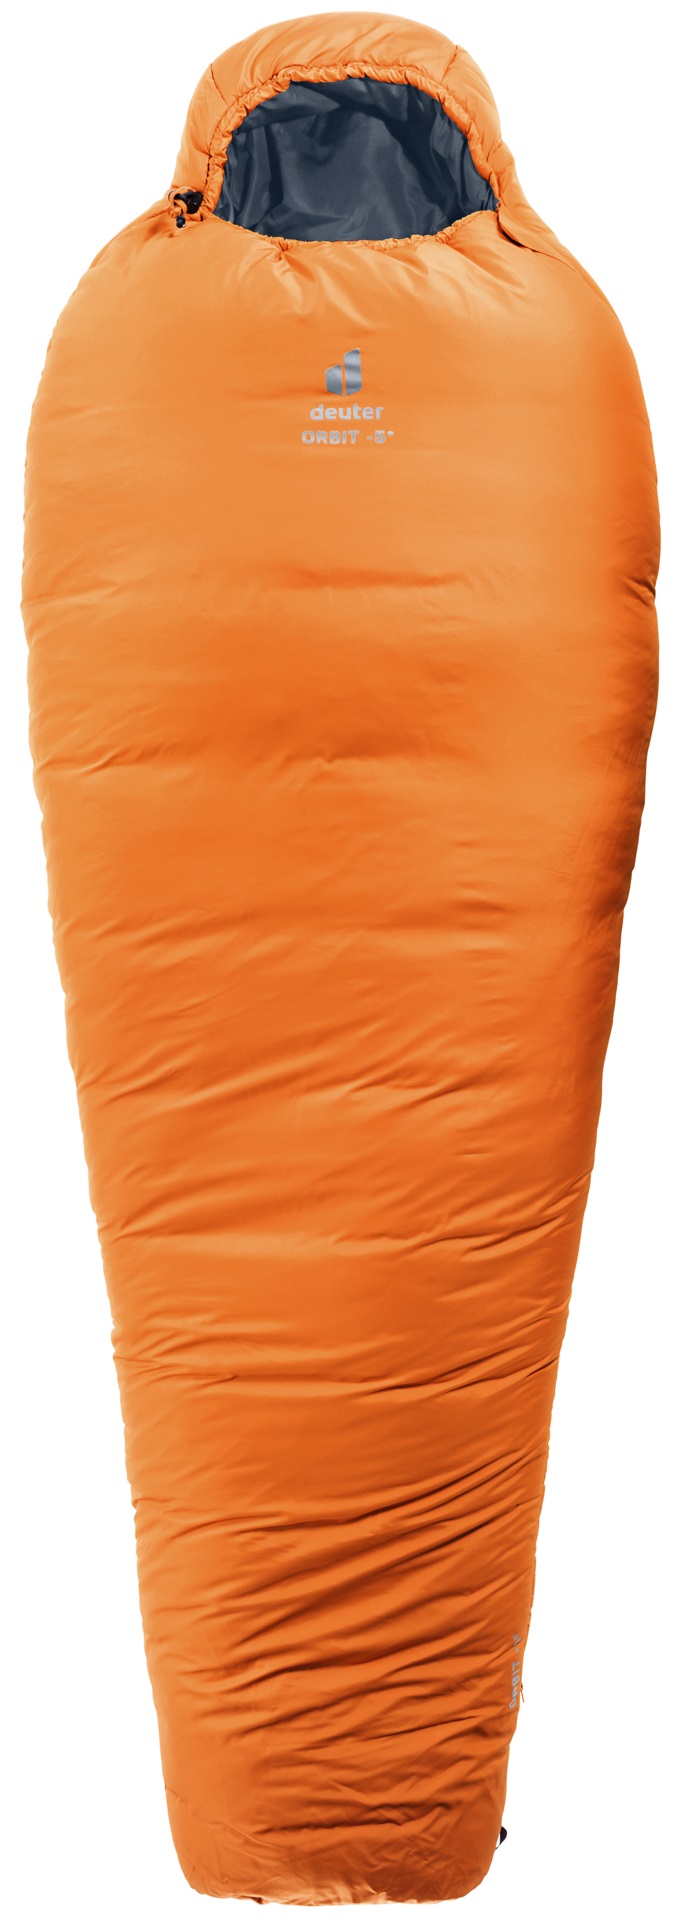 Спальный мешок Deuter Orbit mandarine/ink, правый